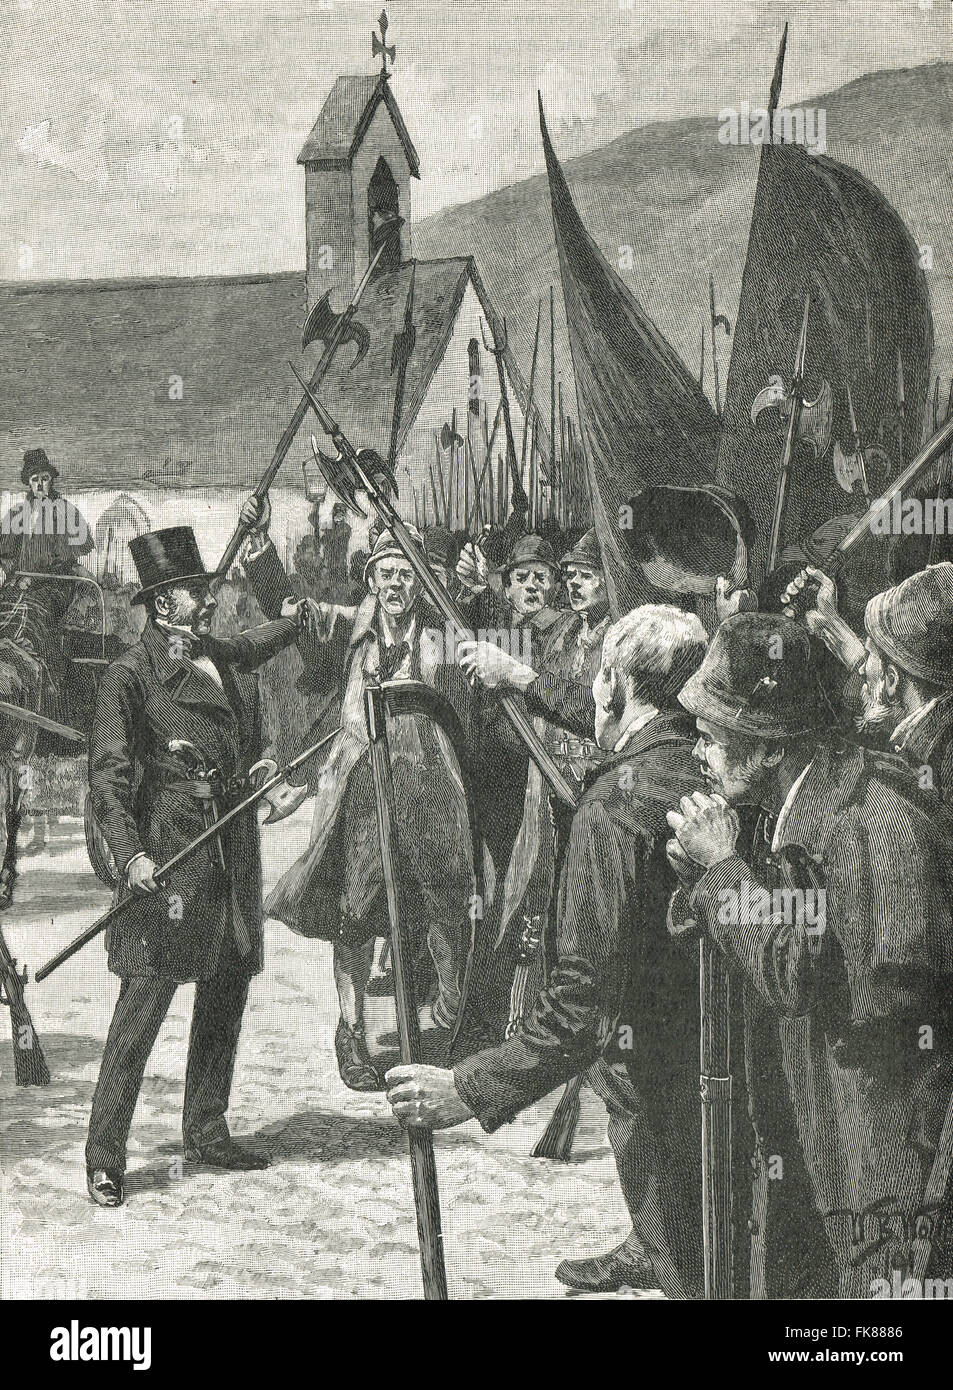 Charles Kickham rassemblant les piquiers à Arta, l'Irlande, rébellion irlandaise de 1848 Banque D'Images